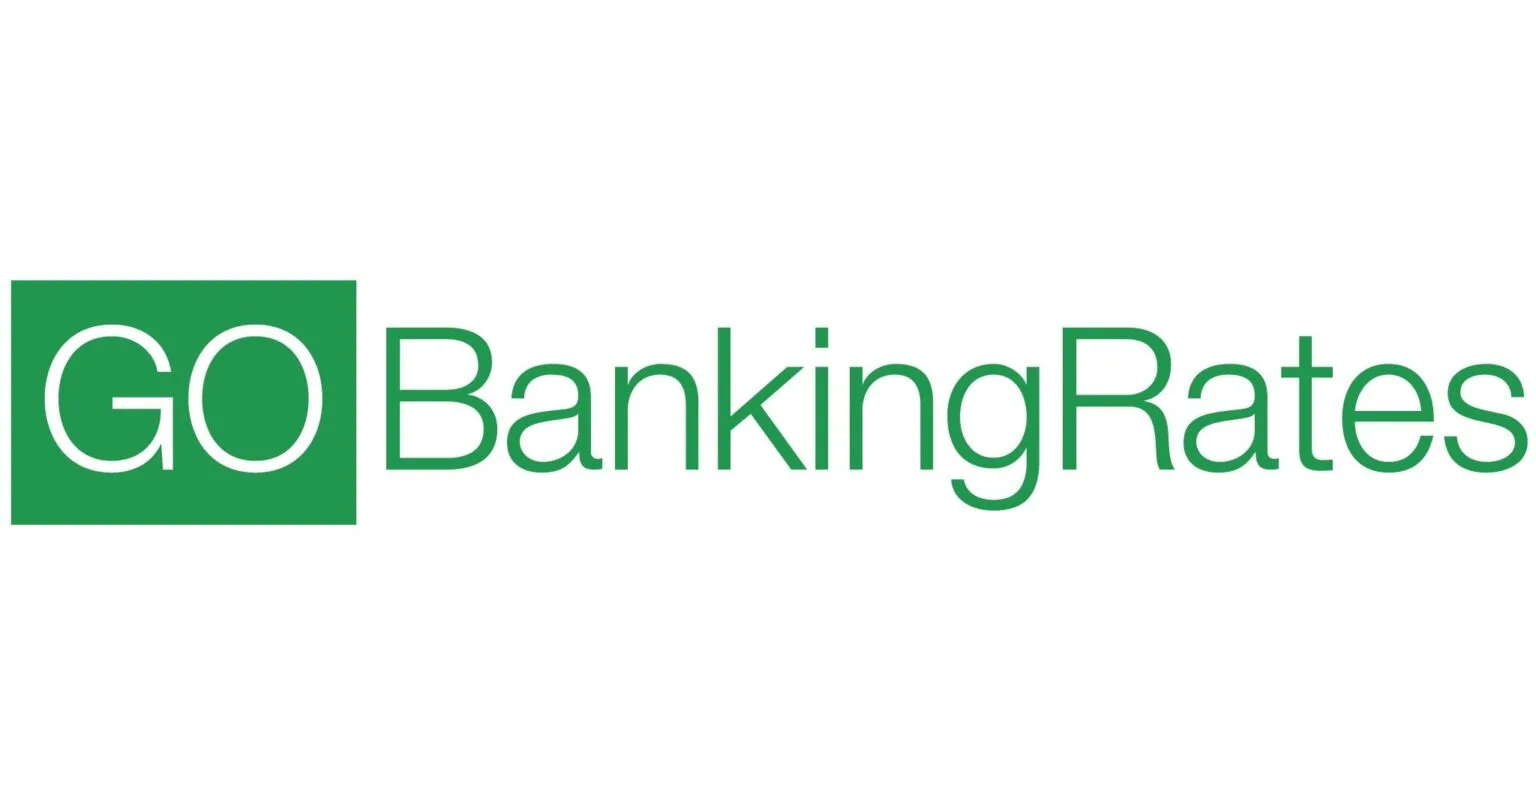 Go banking rates logo